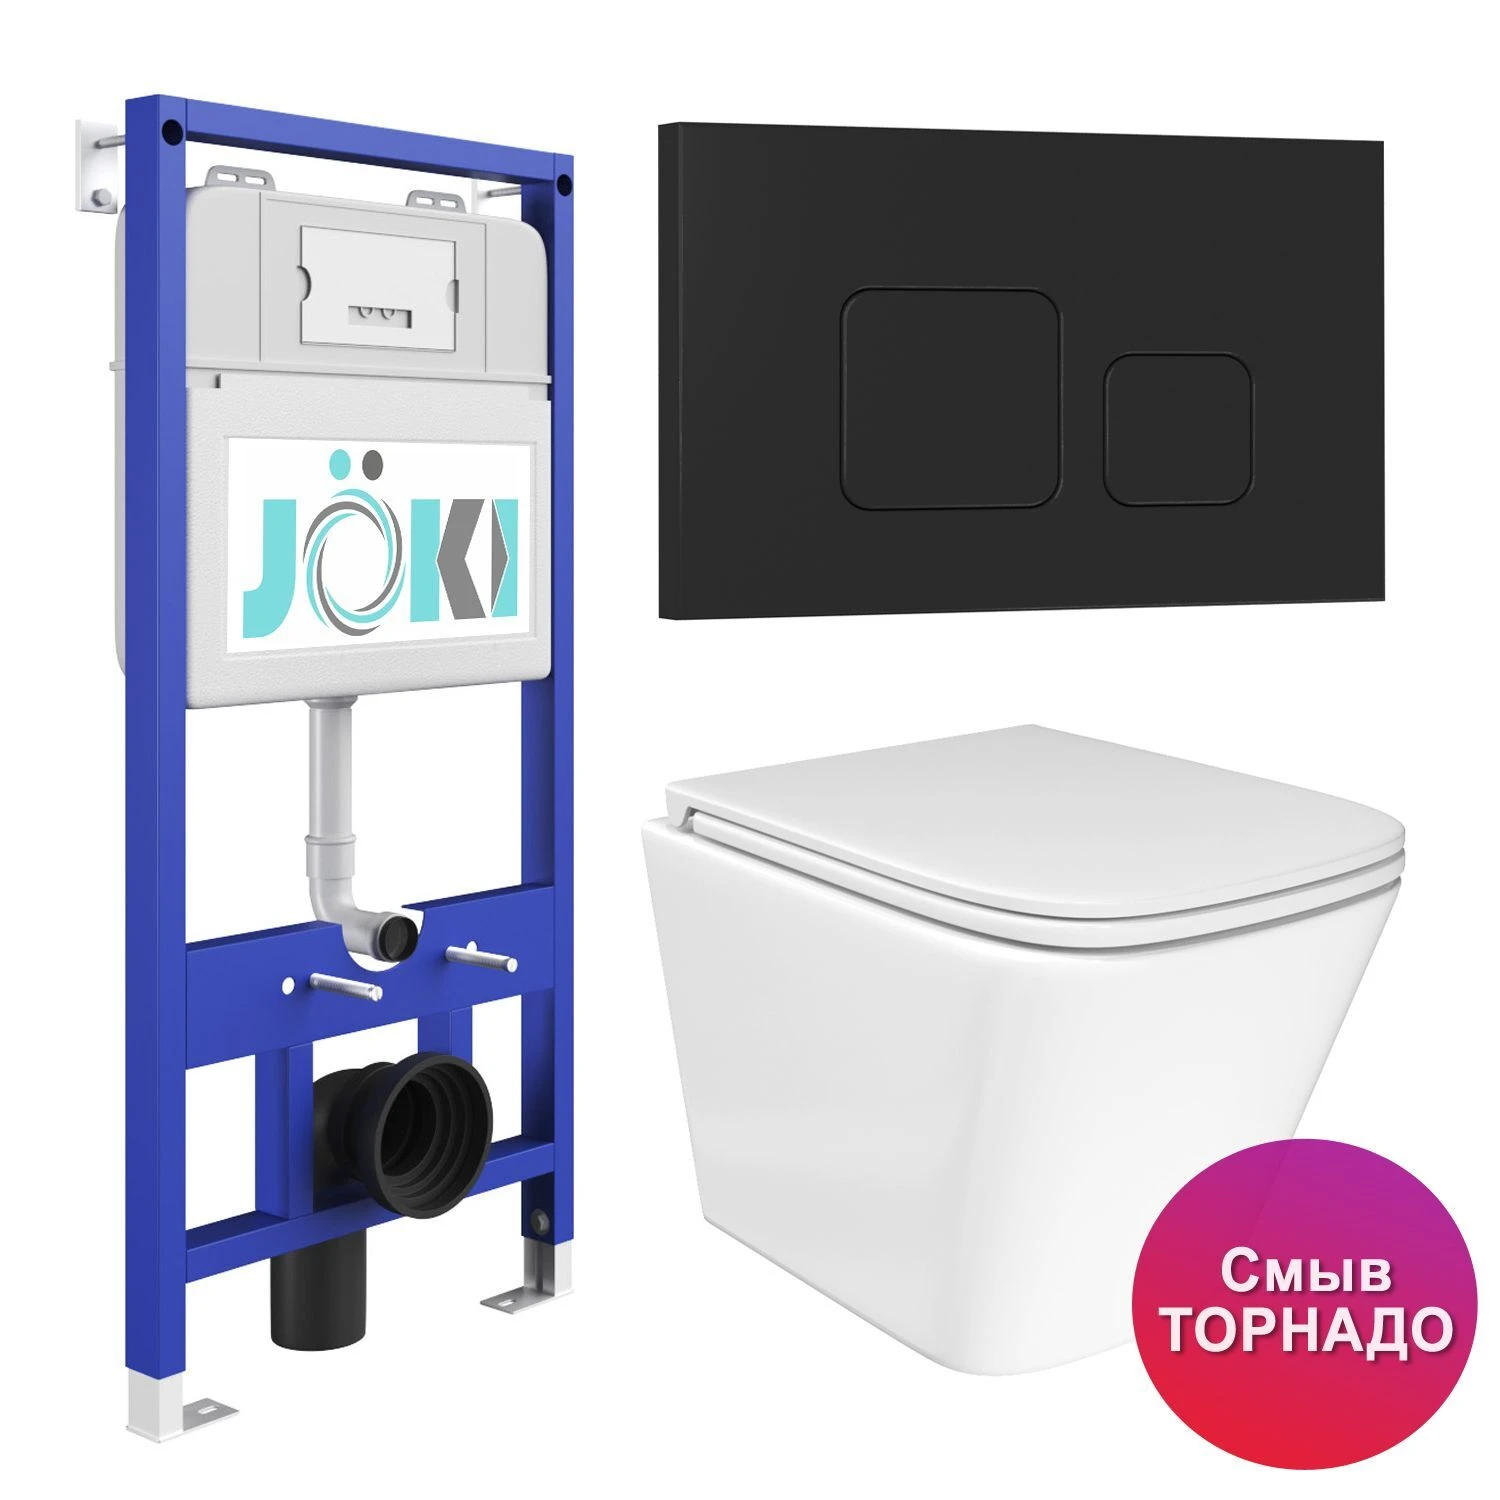 Комплект: JOKI Инсталляция JK01150+Кнопка JK702534BM черный+Verna T JK3031025 белый унитаз, смыв Торнадо